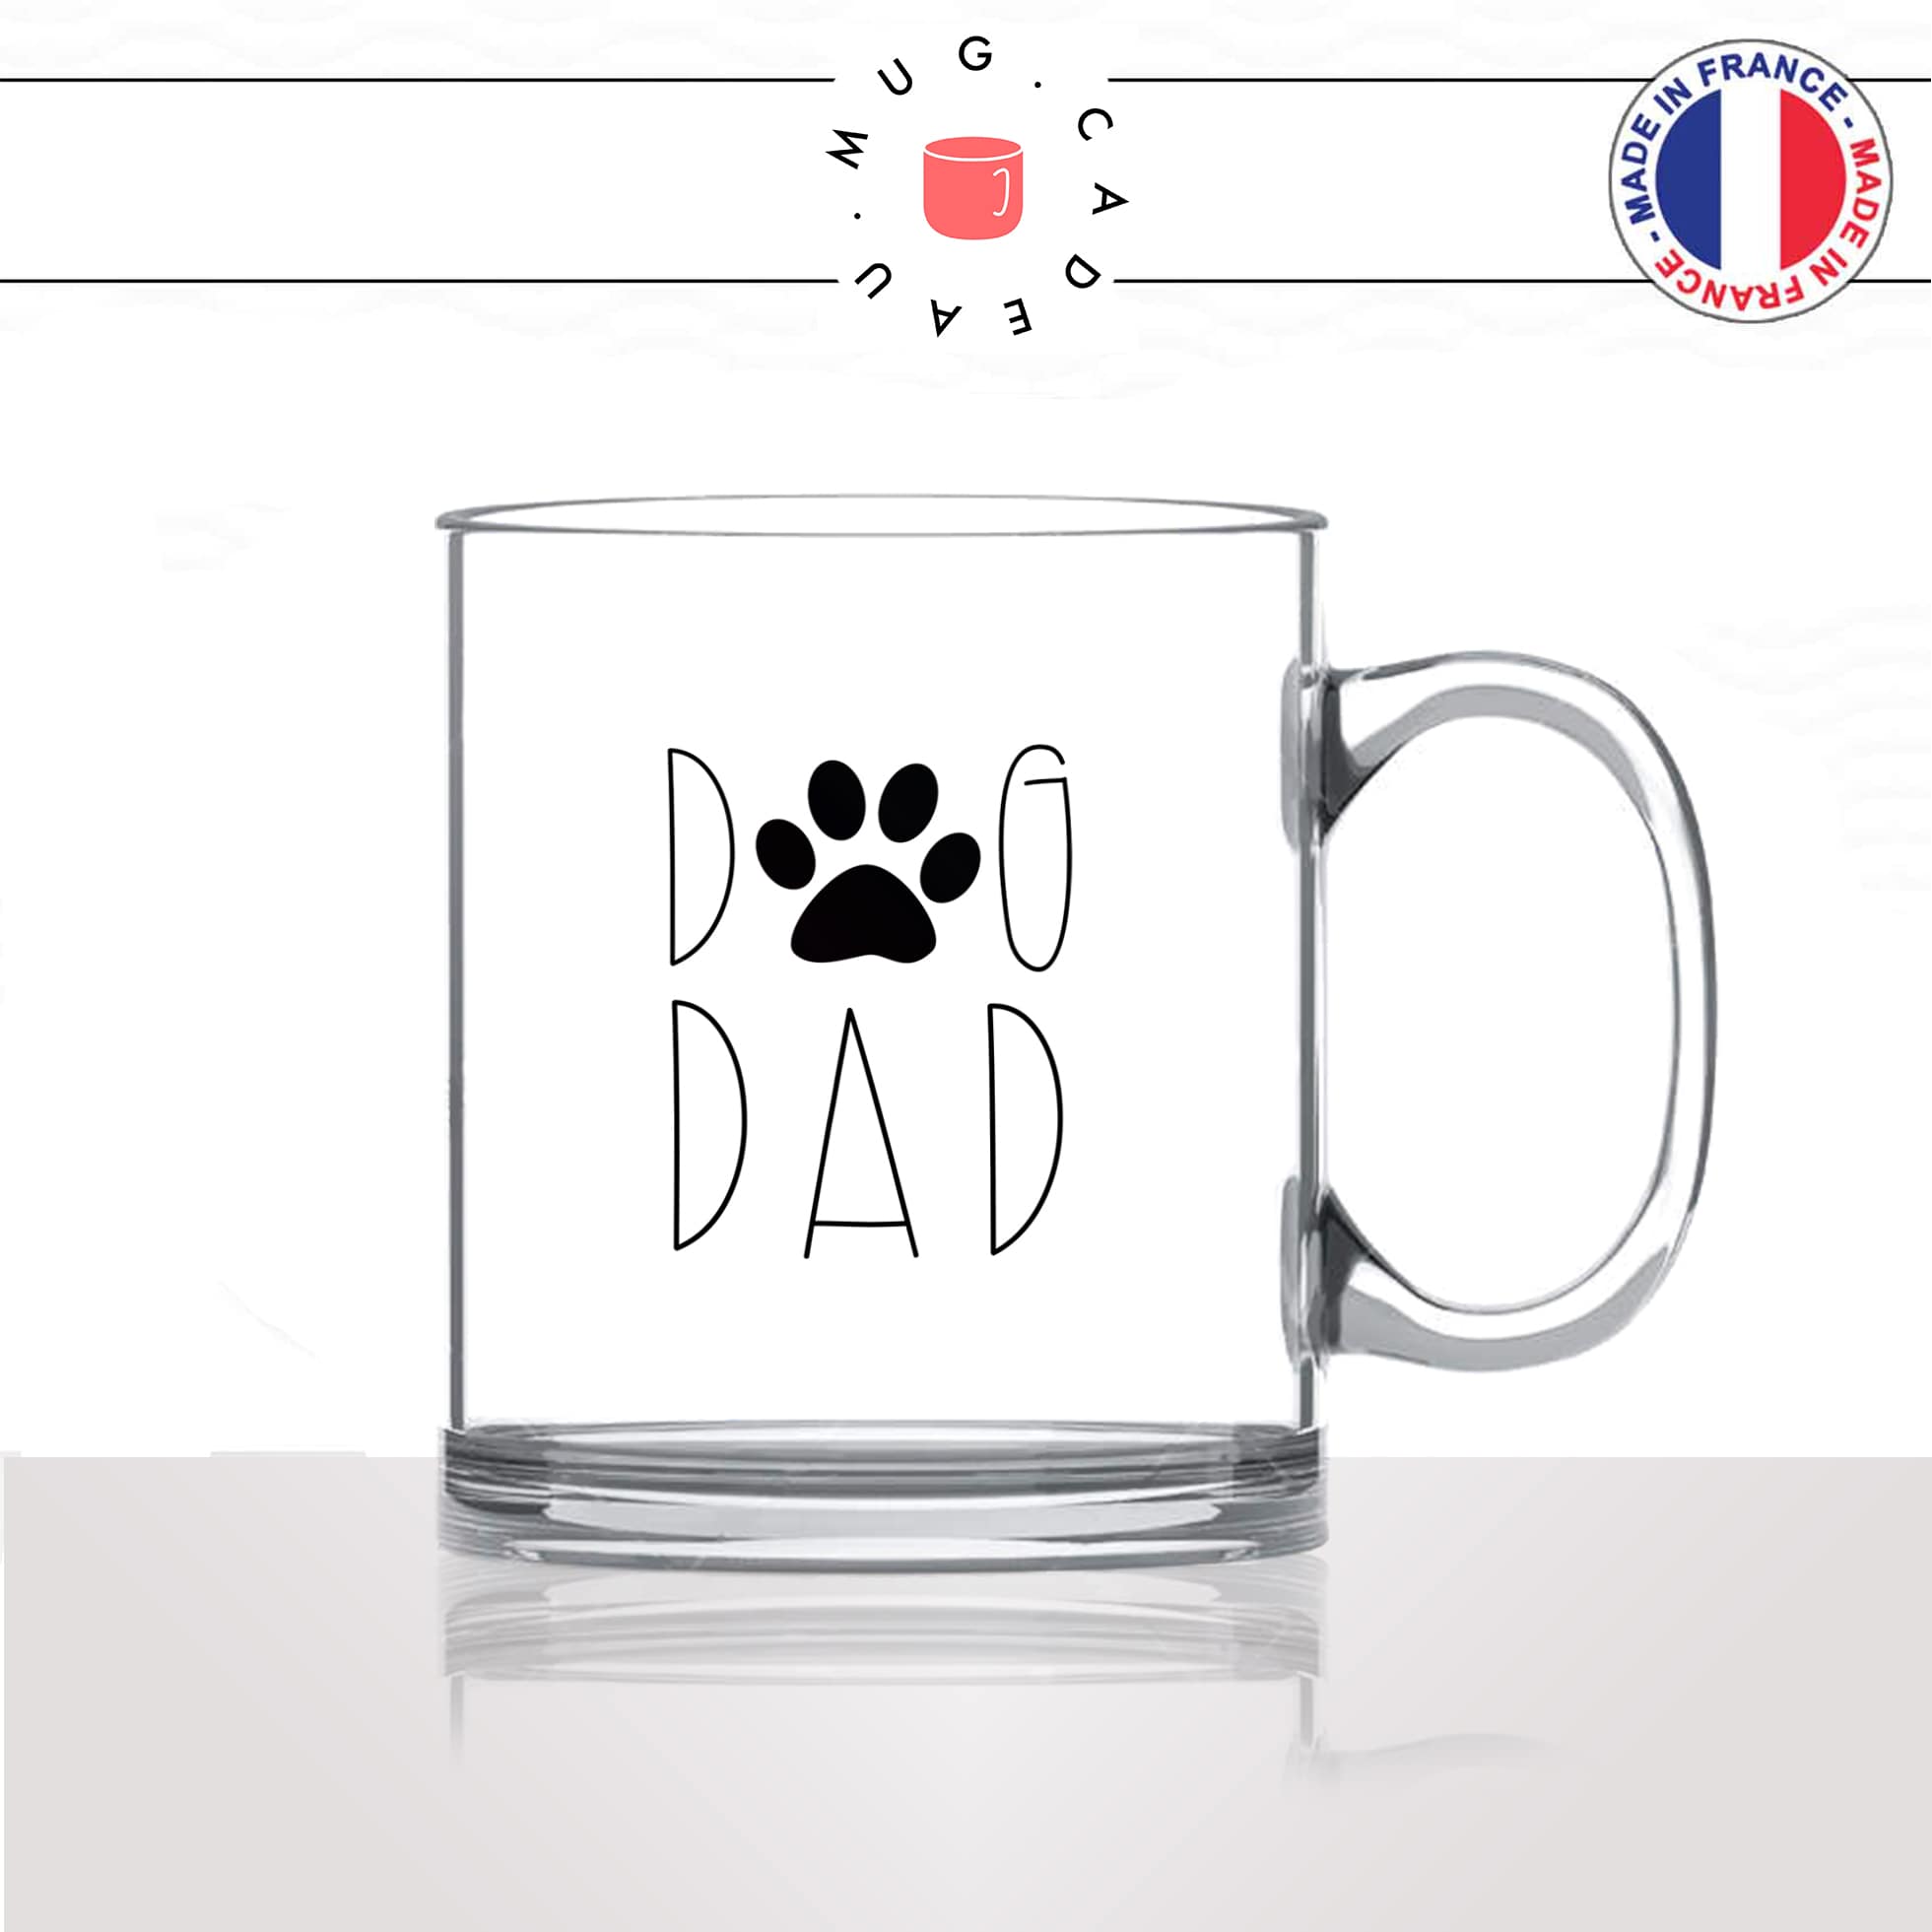 tasse-mug-en-verre-glass-dog-dad-papa-chien-patte-amour-mignon-animal-chiot-noir-fun-café-thé-idée-cadeau-original-personnalisé2-min